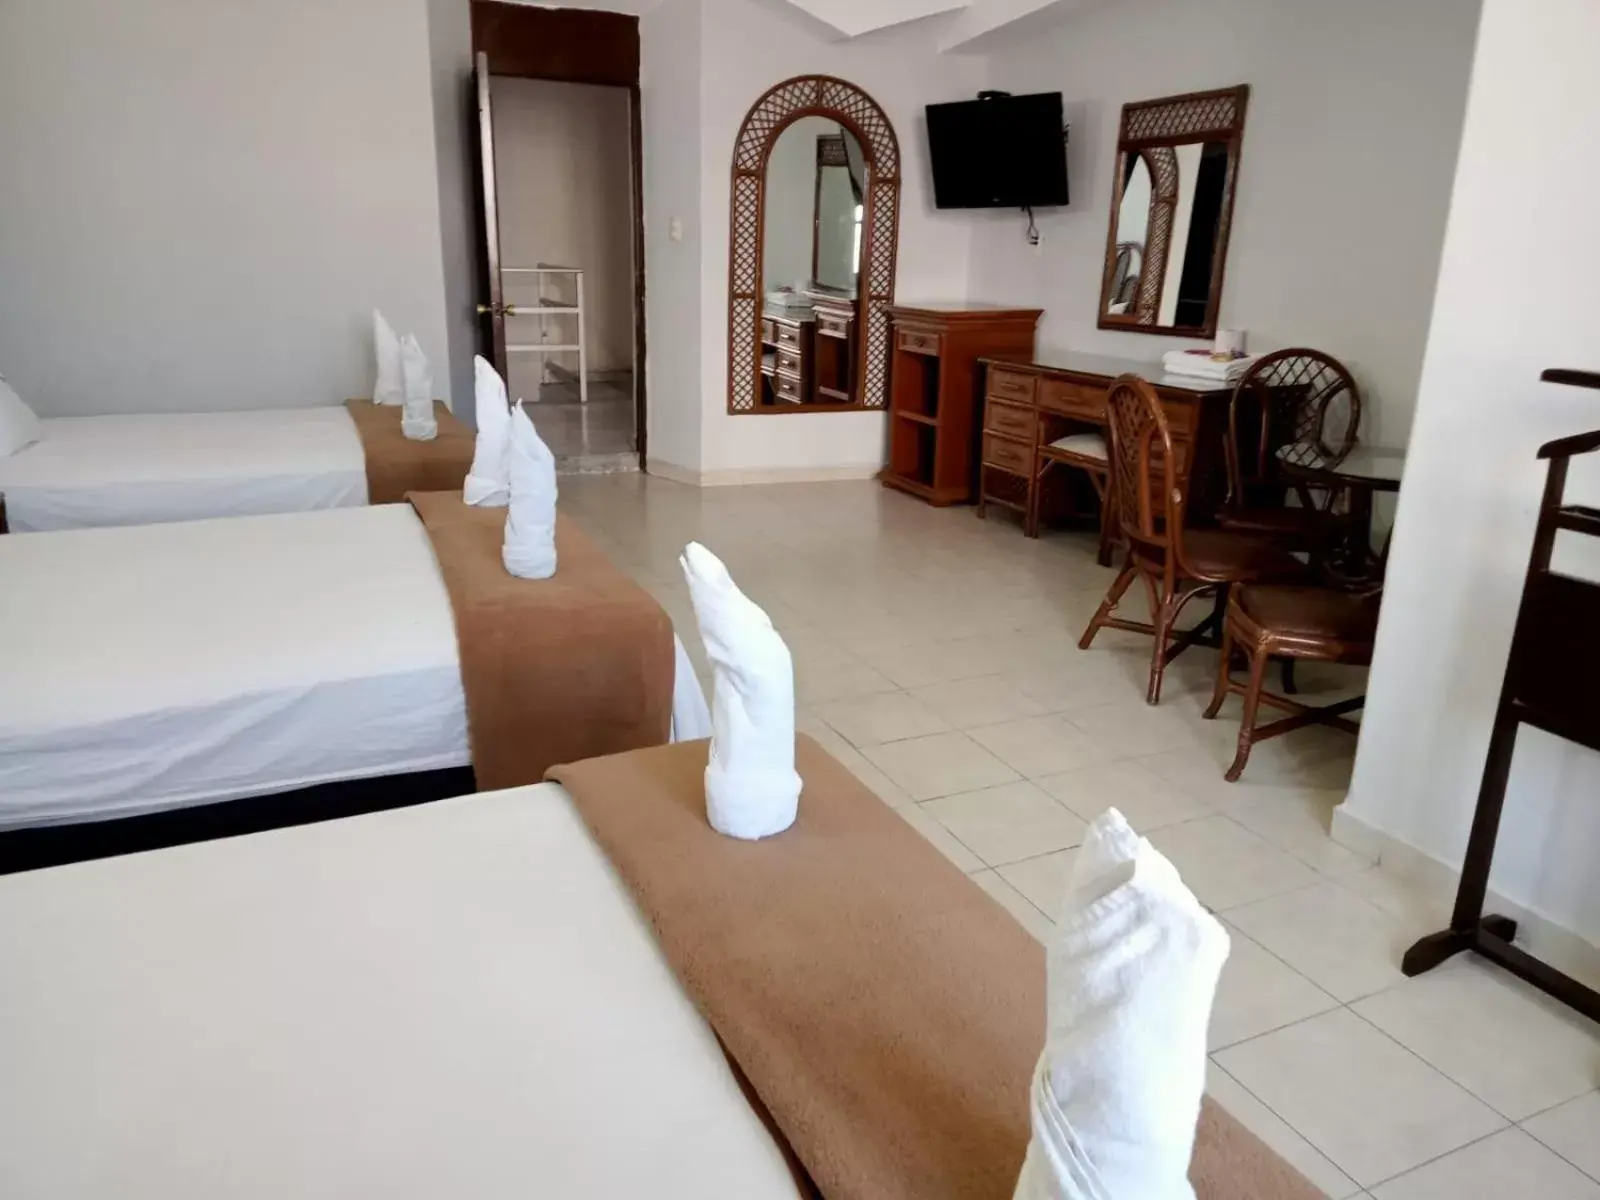 Bed in Hotel Santander Veracruz - Malecon